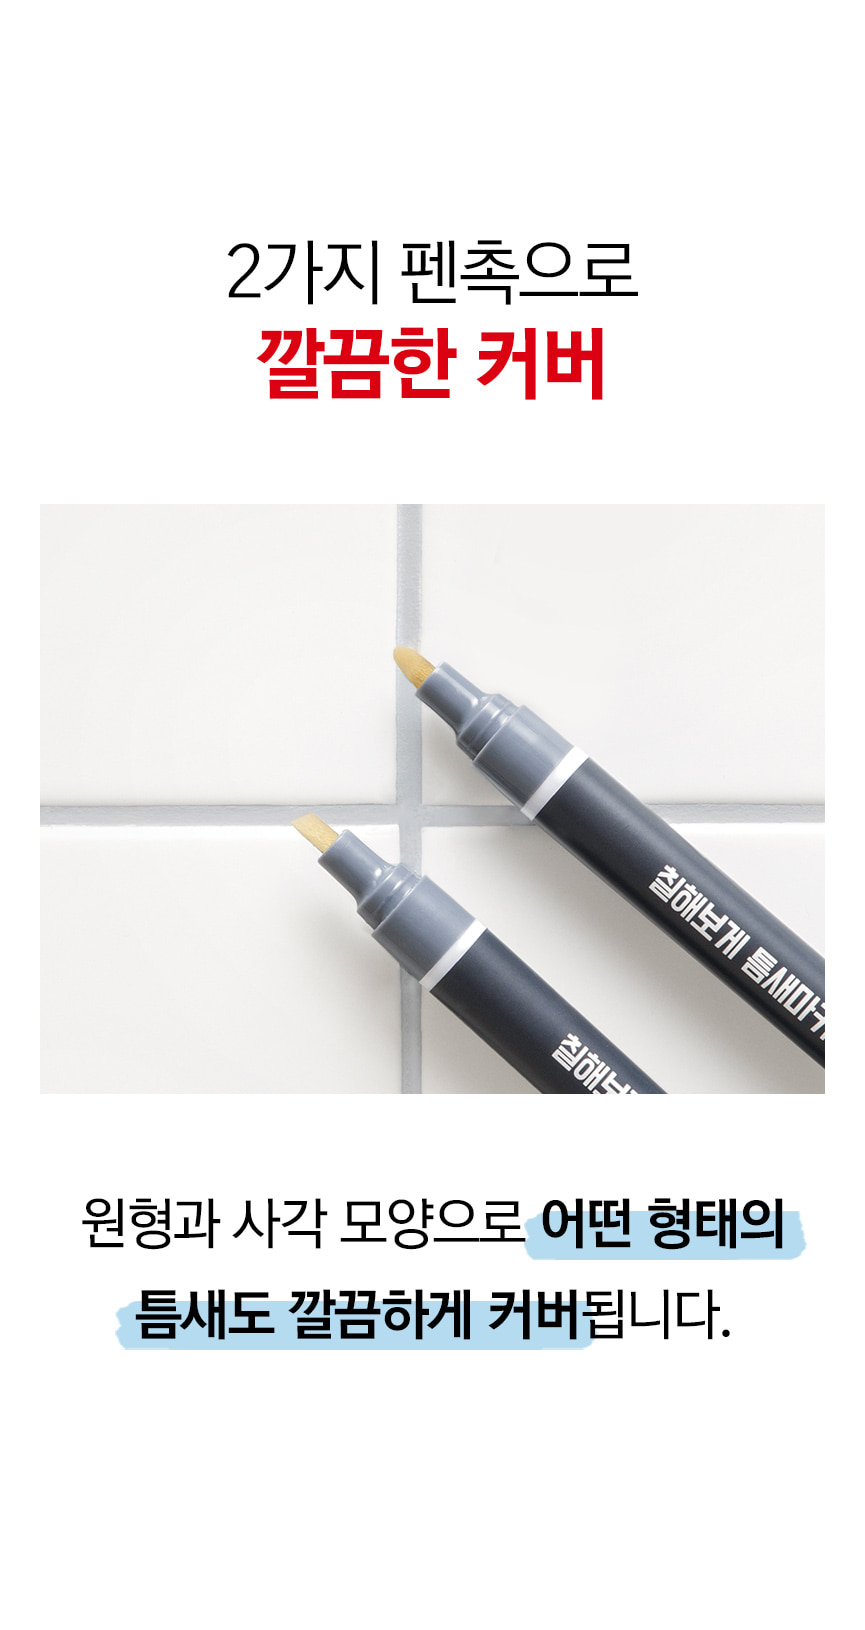 韓國食品-[Cleanboss] Neat marker for gap (2 marker + 6 pen tips)